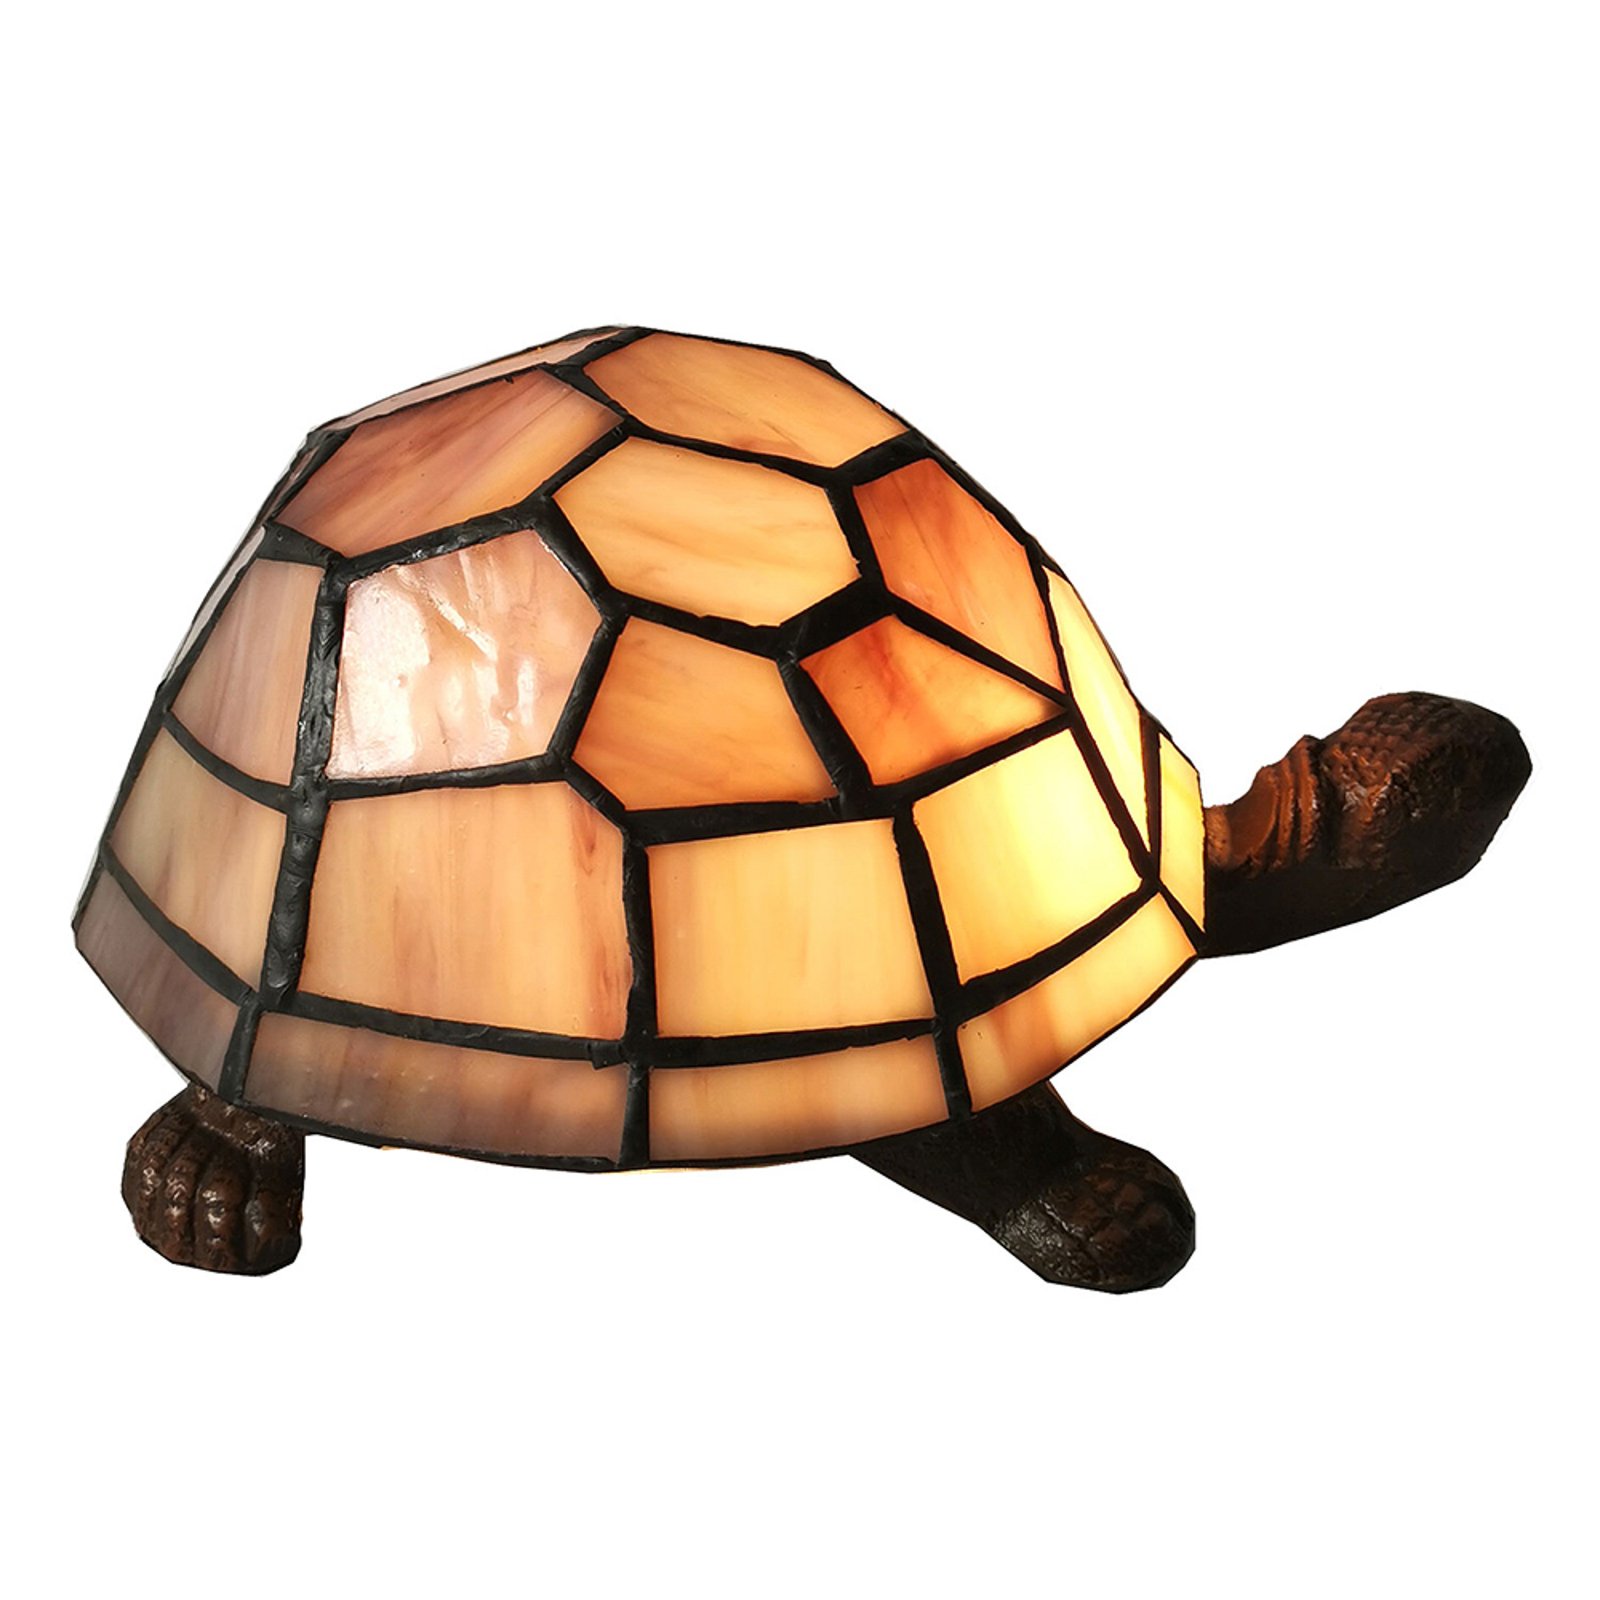 Pöytälamppu 5LL-6054 kilpikonna tiffany-tyyliä